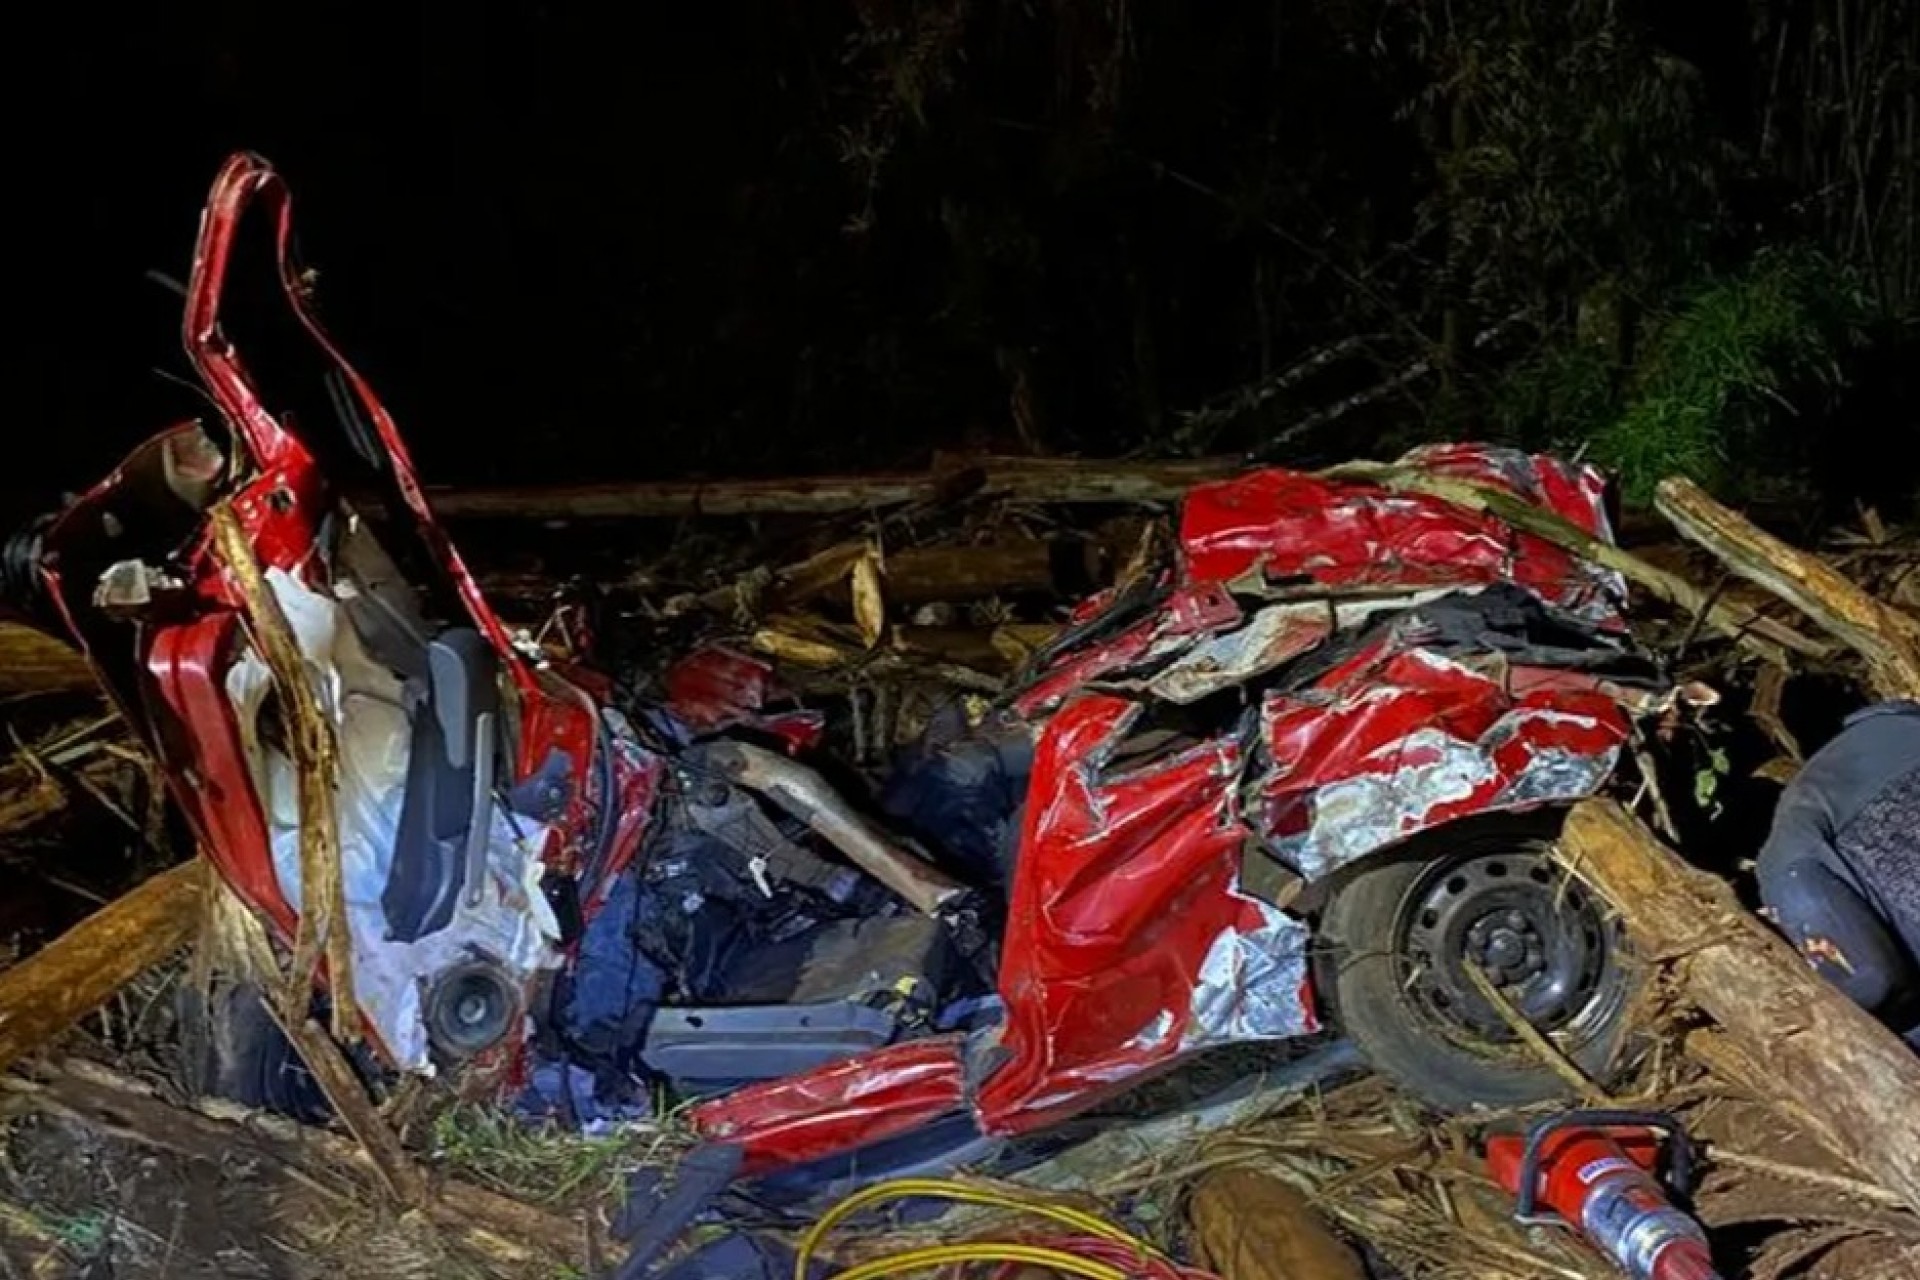 Cinco pessoas morrem após toras de eucalipto caírem de caminhão sobre carros